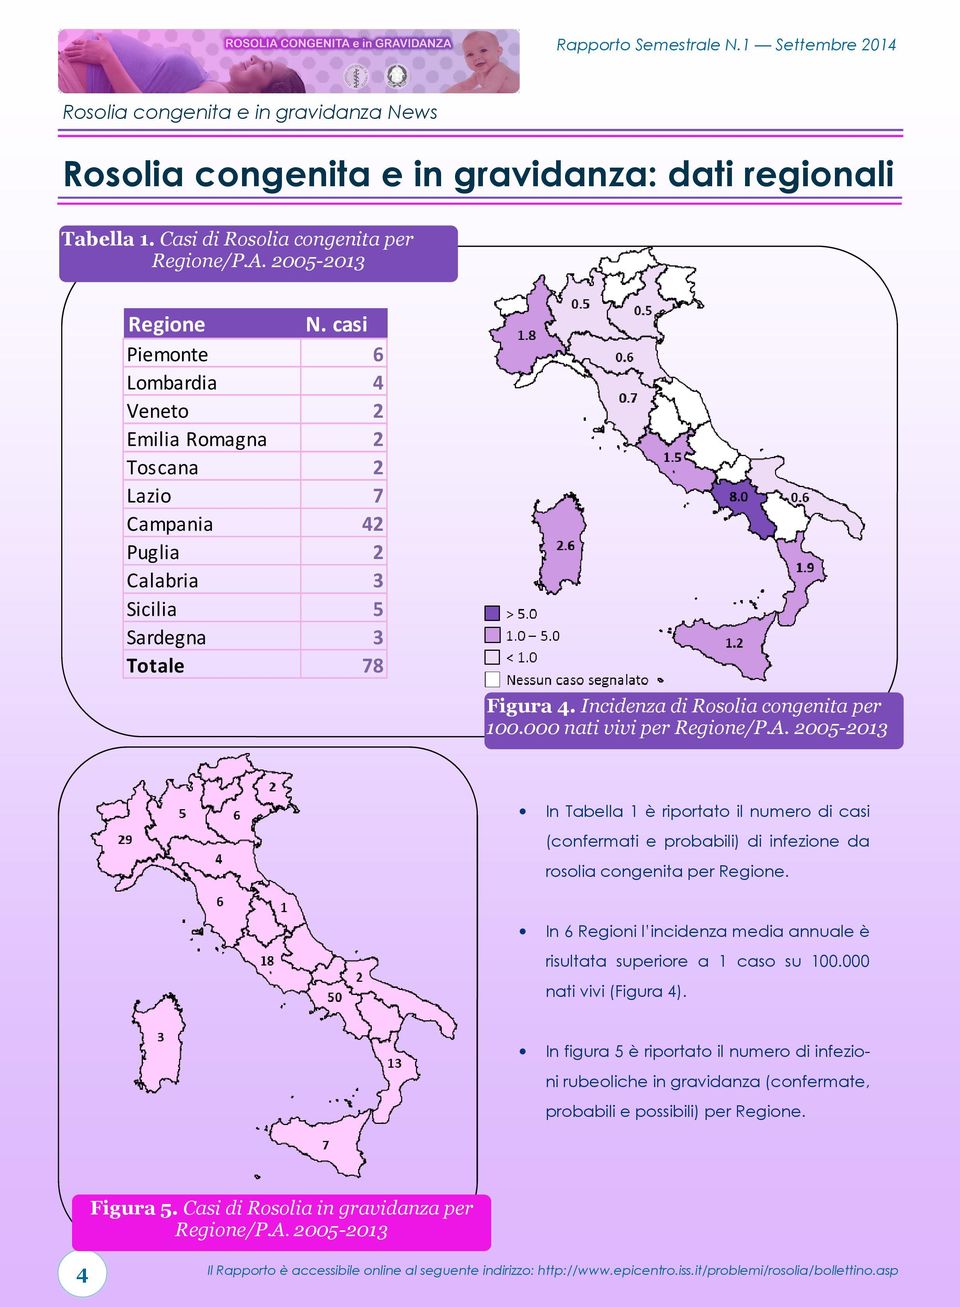 000 nati vivi per Regione/P.A. 005-0 In Tabella è riportato il numero di casi (confermati e probabili) di infezione da rosolia congenita per Regione.